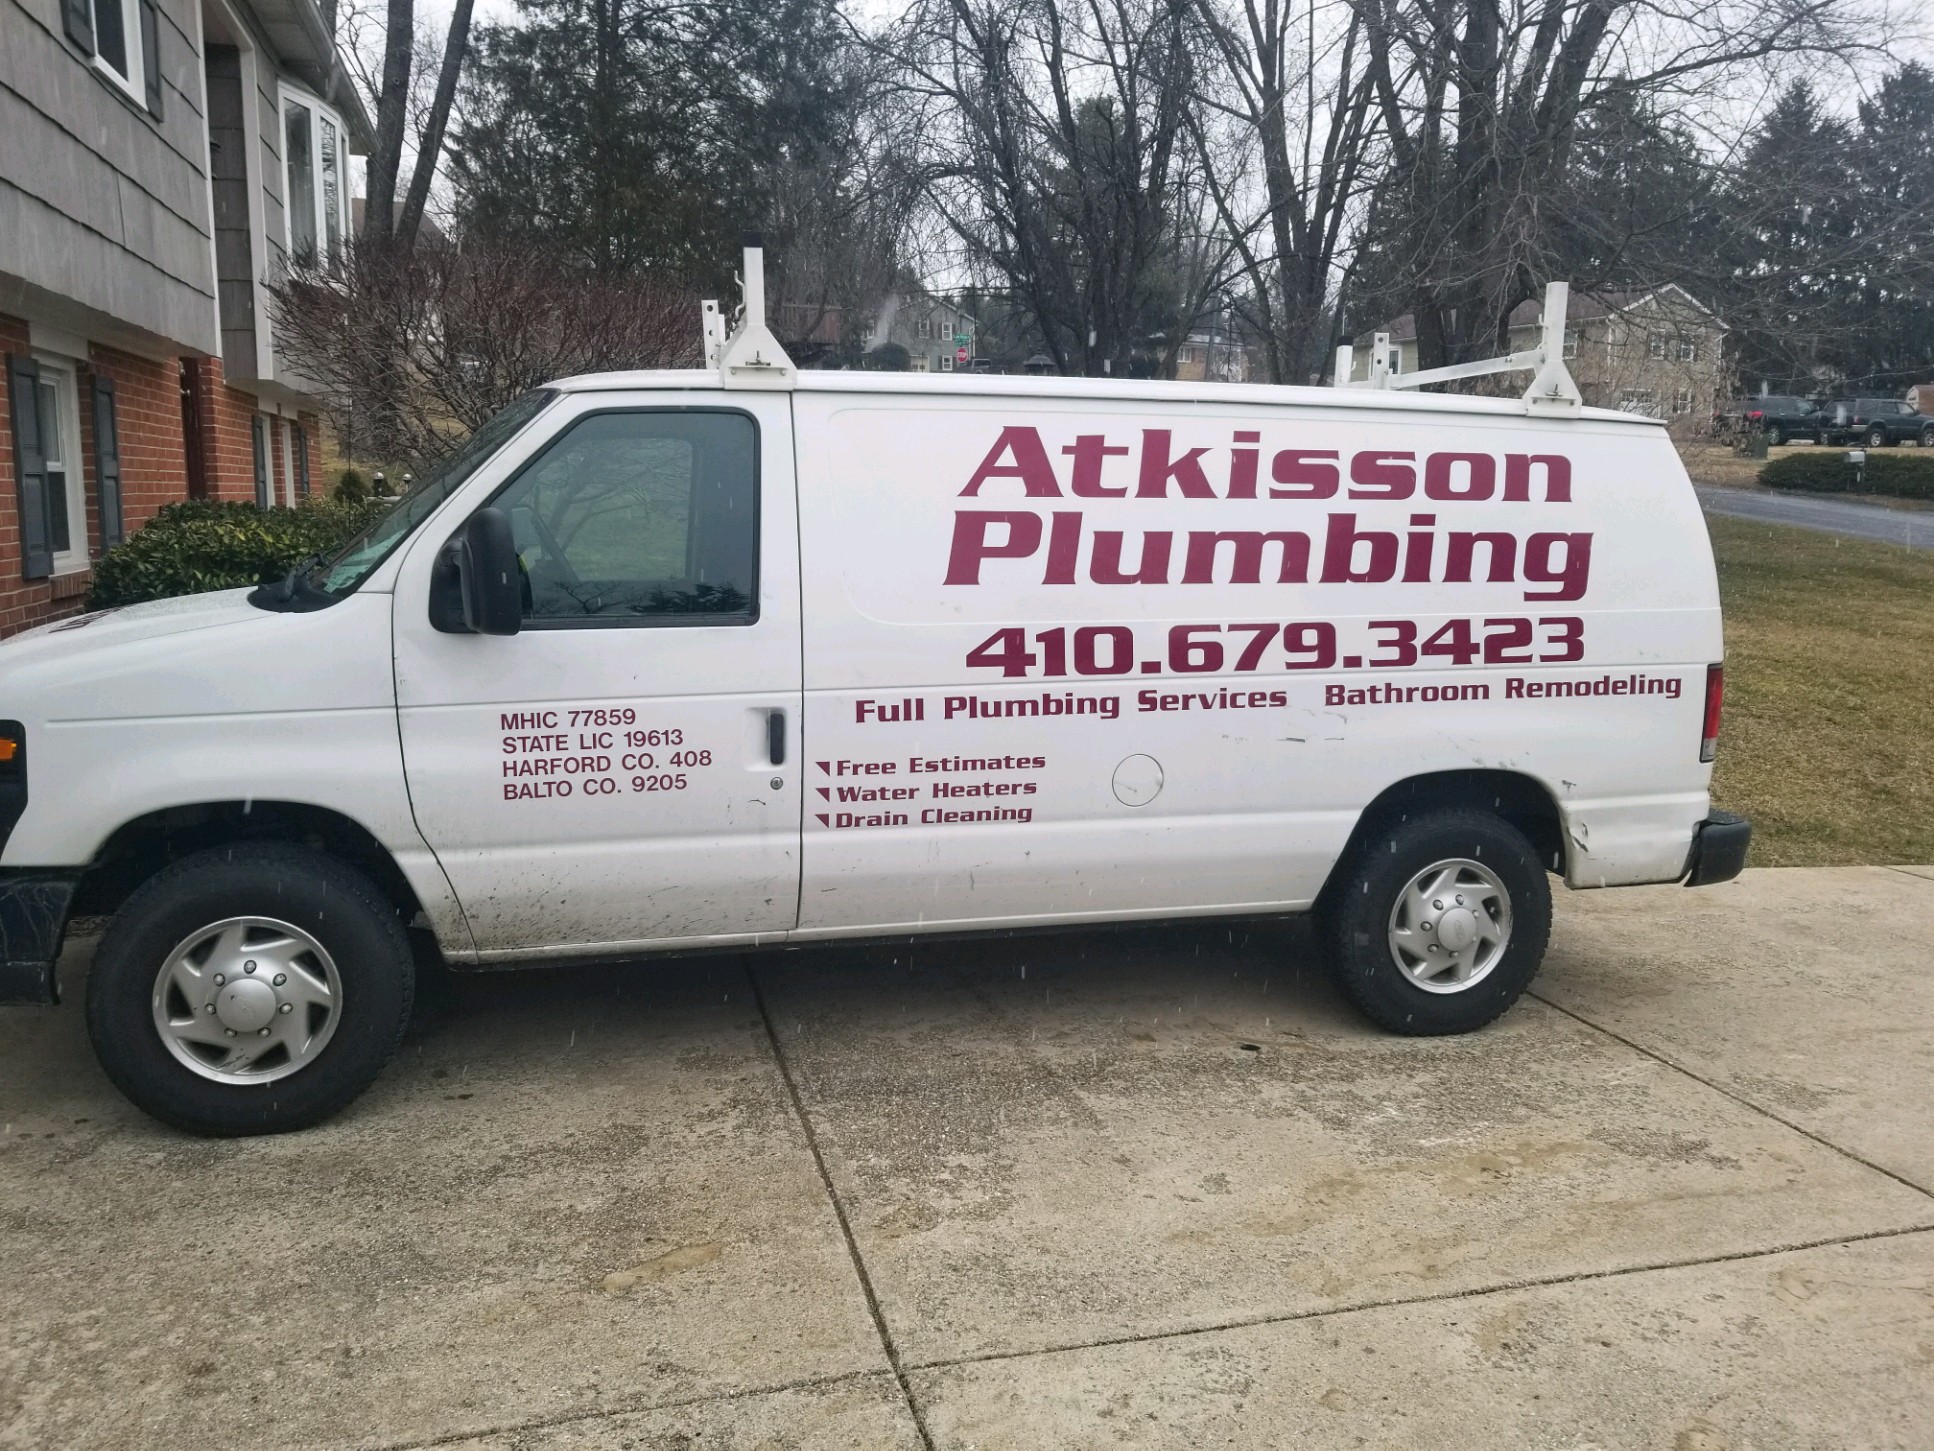 Atkisson Plumbing & Heating